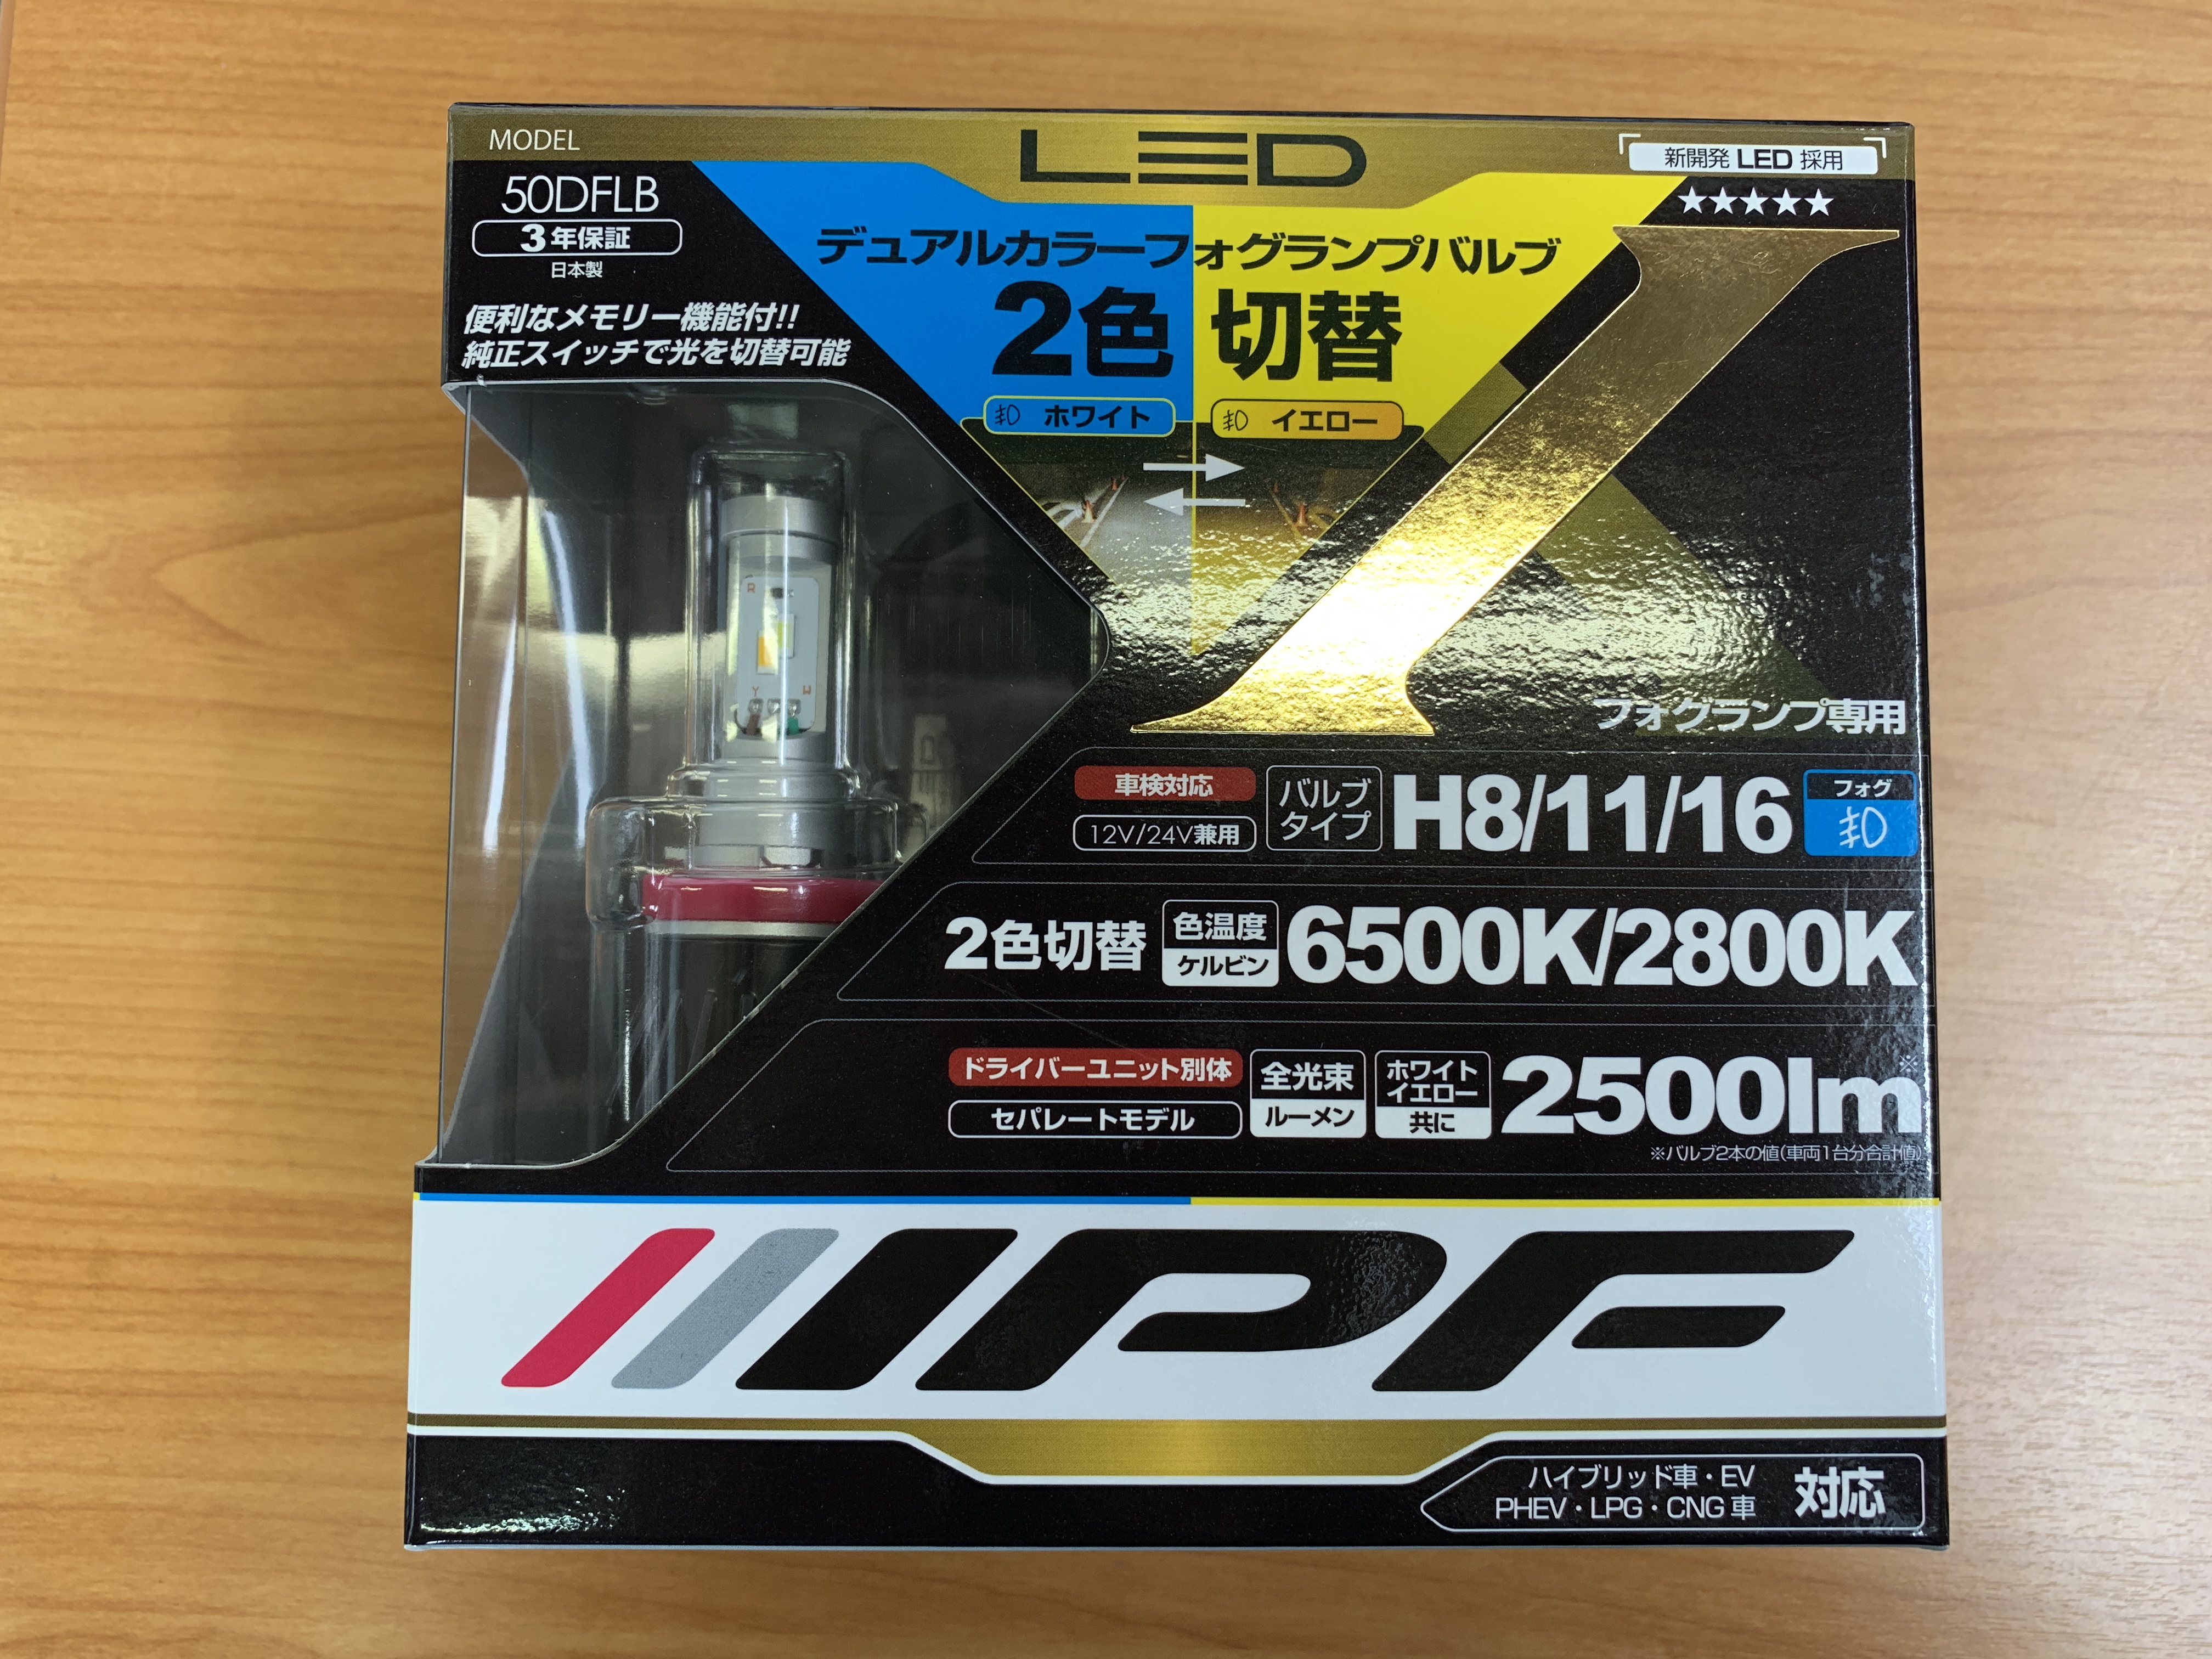 IPF LED フォグランプ 50DFLB ２色切り替えタイプ 30プリウスに 